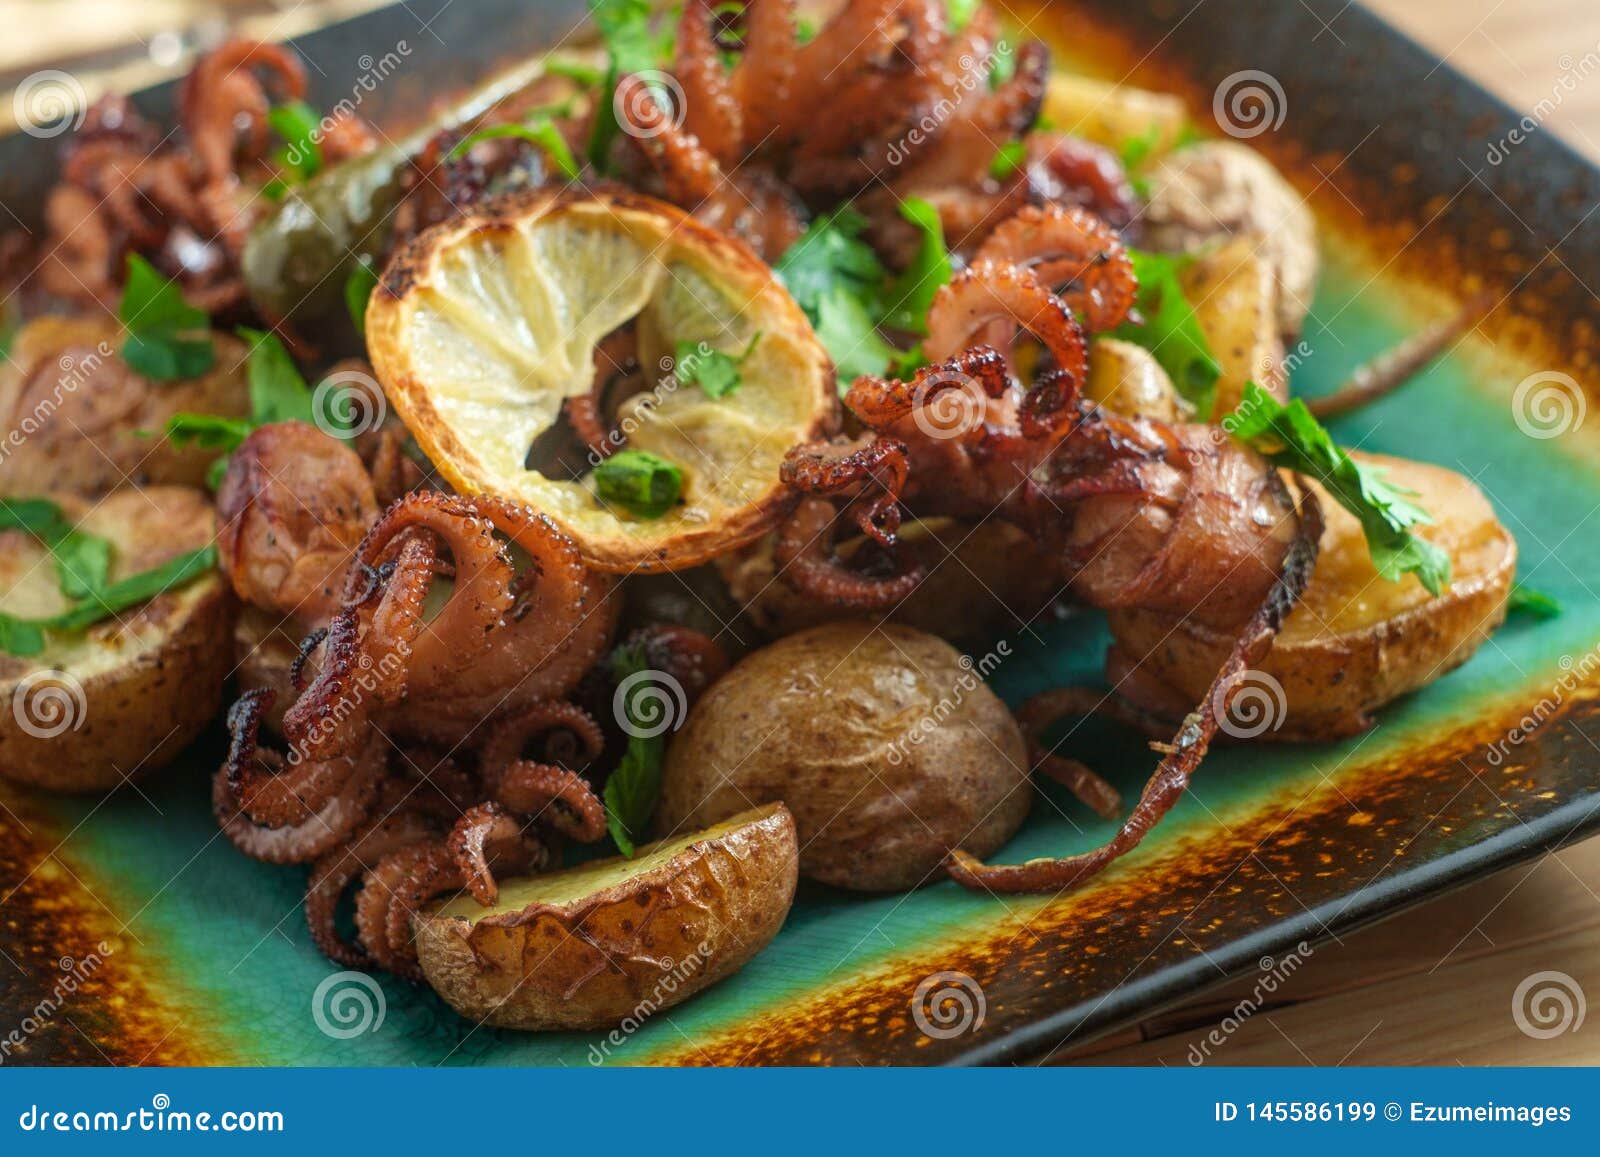 portuguese octopus a lagareiro